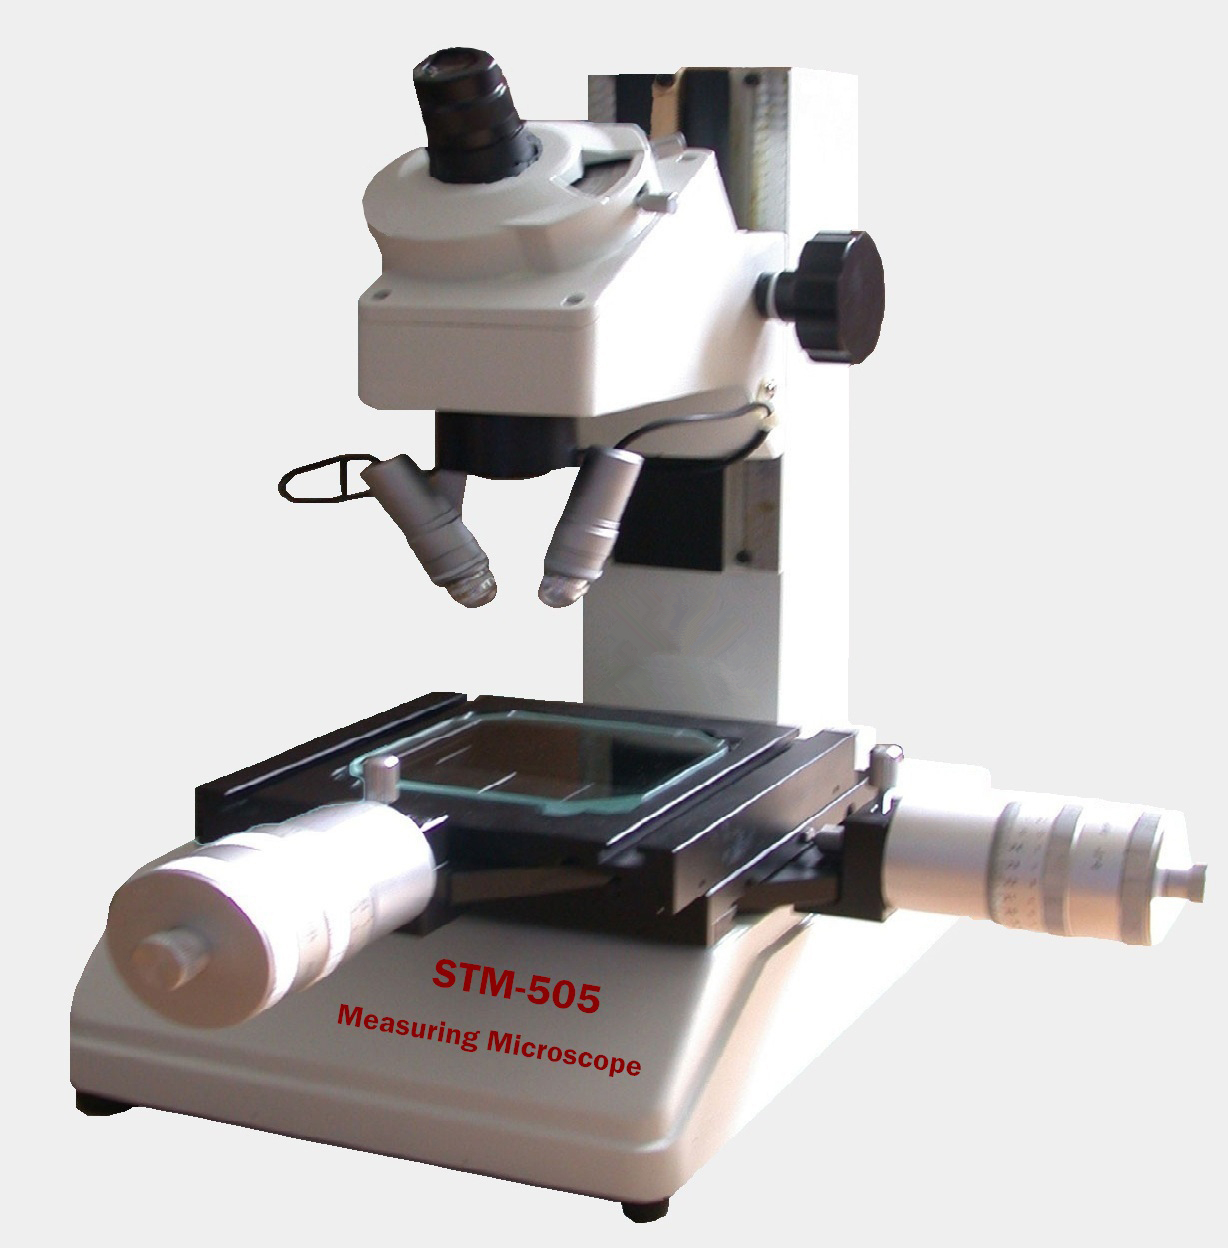 Tool-Maker��s Microscopes STM-505 